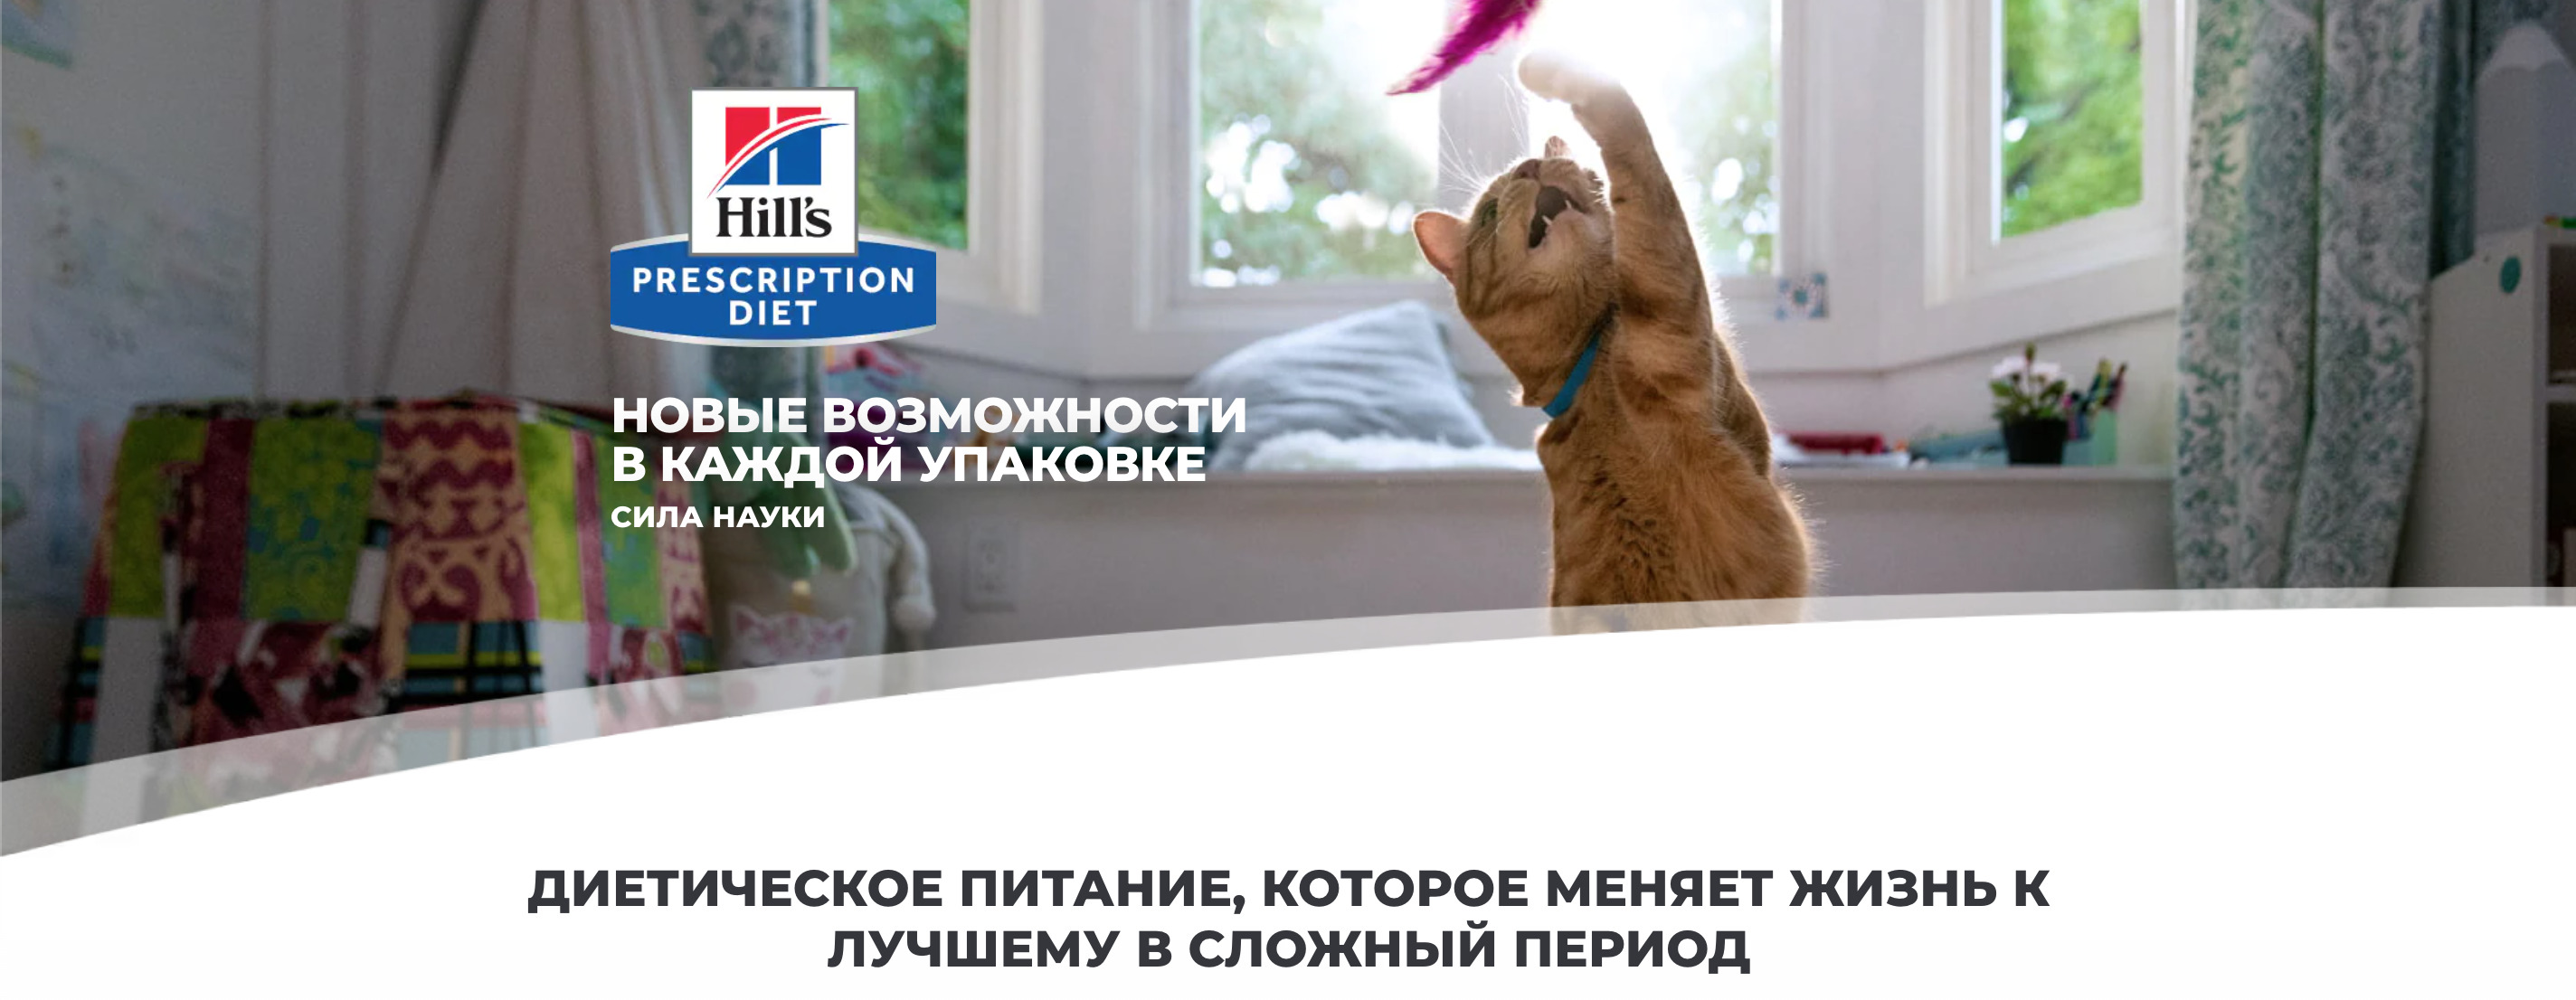 купить Сухие диетические корма для кошек Hill's Prescription Diet с бесплатной доставкой в Калининграде